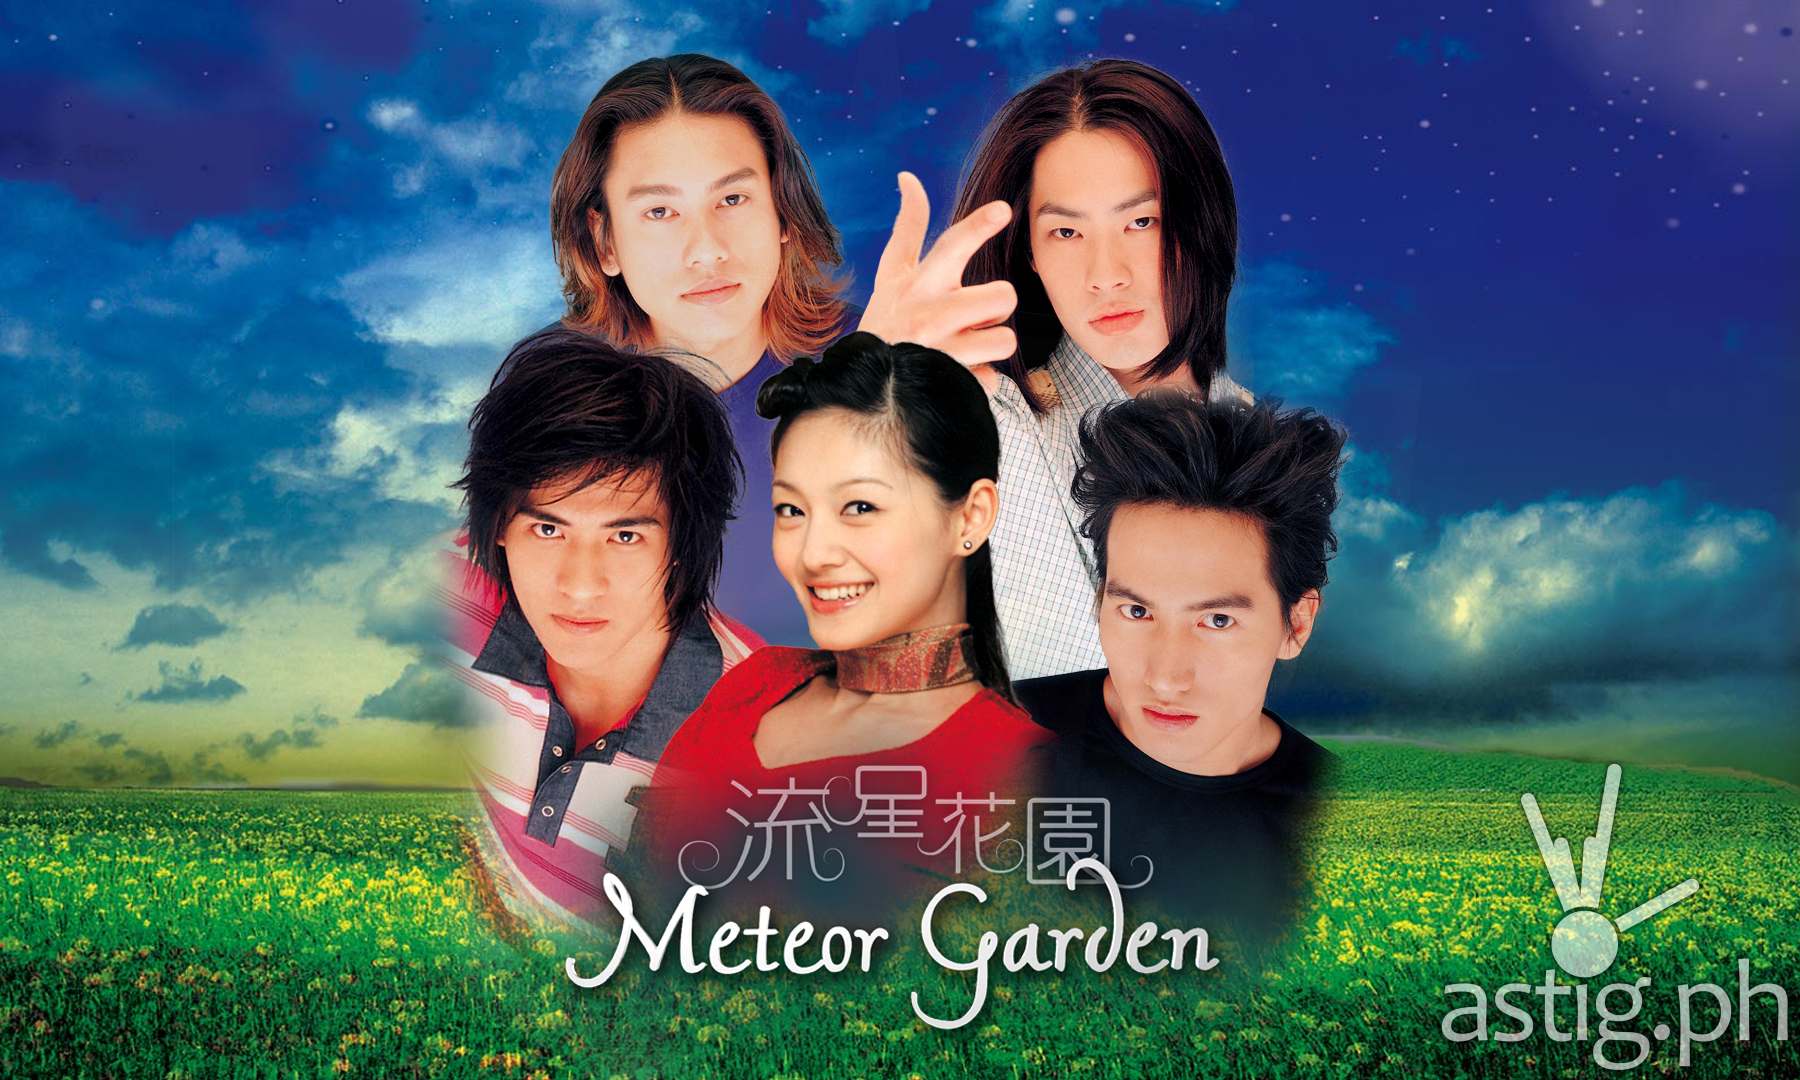 Meteor Garden